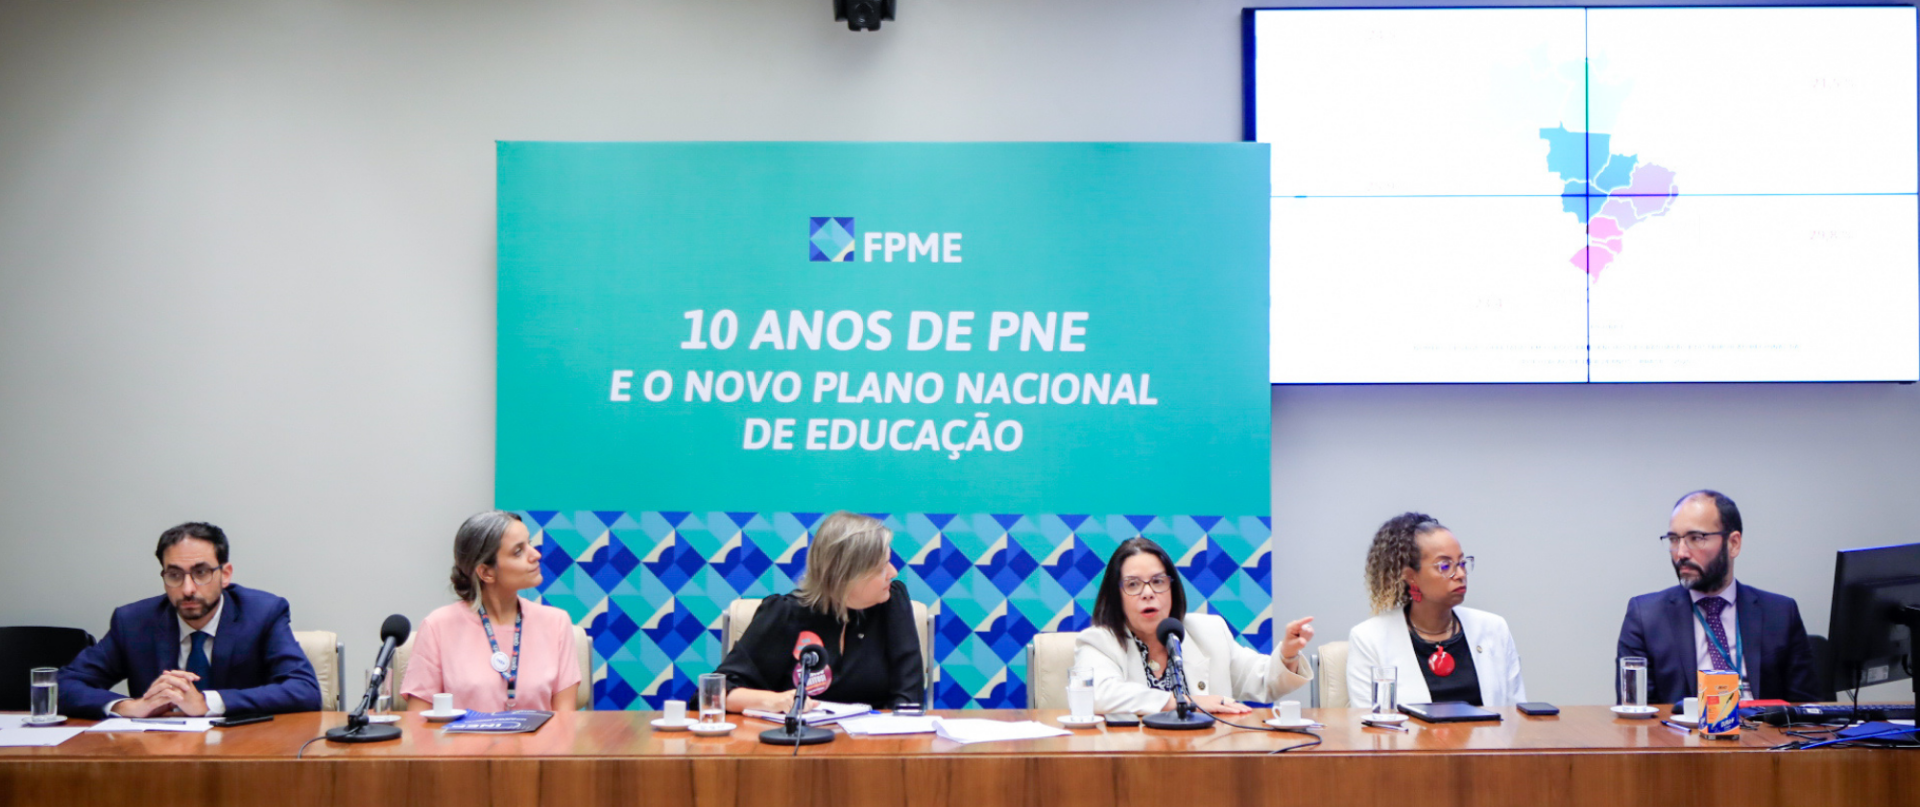 Brasil cumpriu metas relacionadas à pós-graduação no PNE
